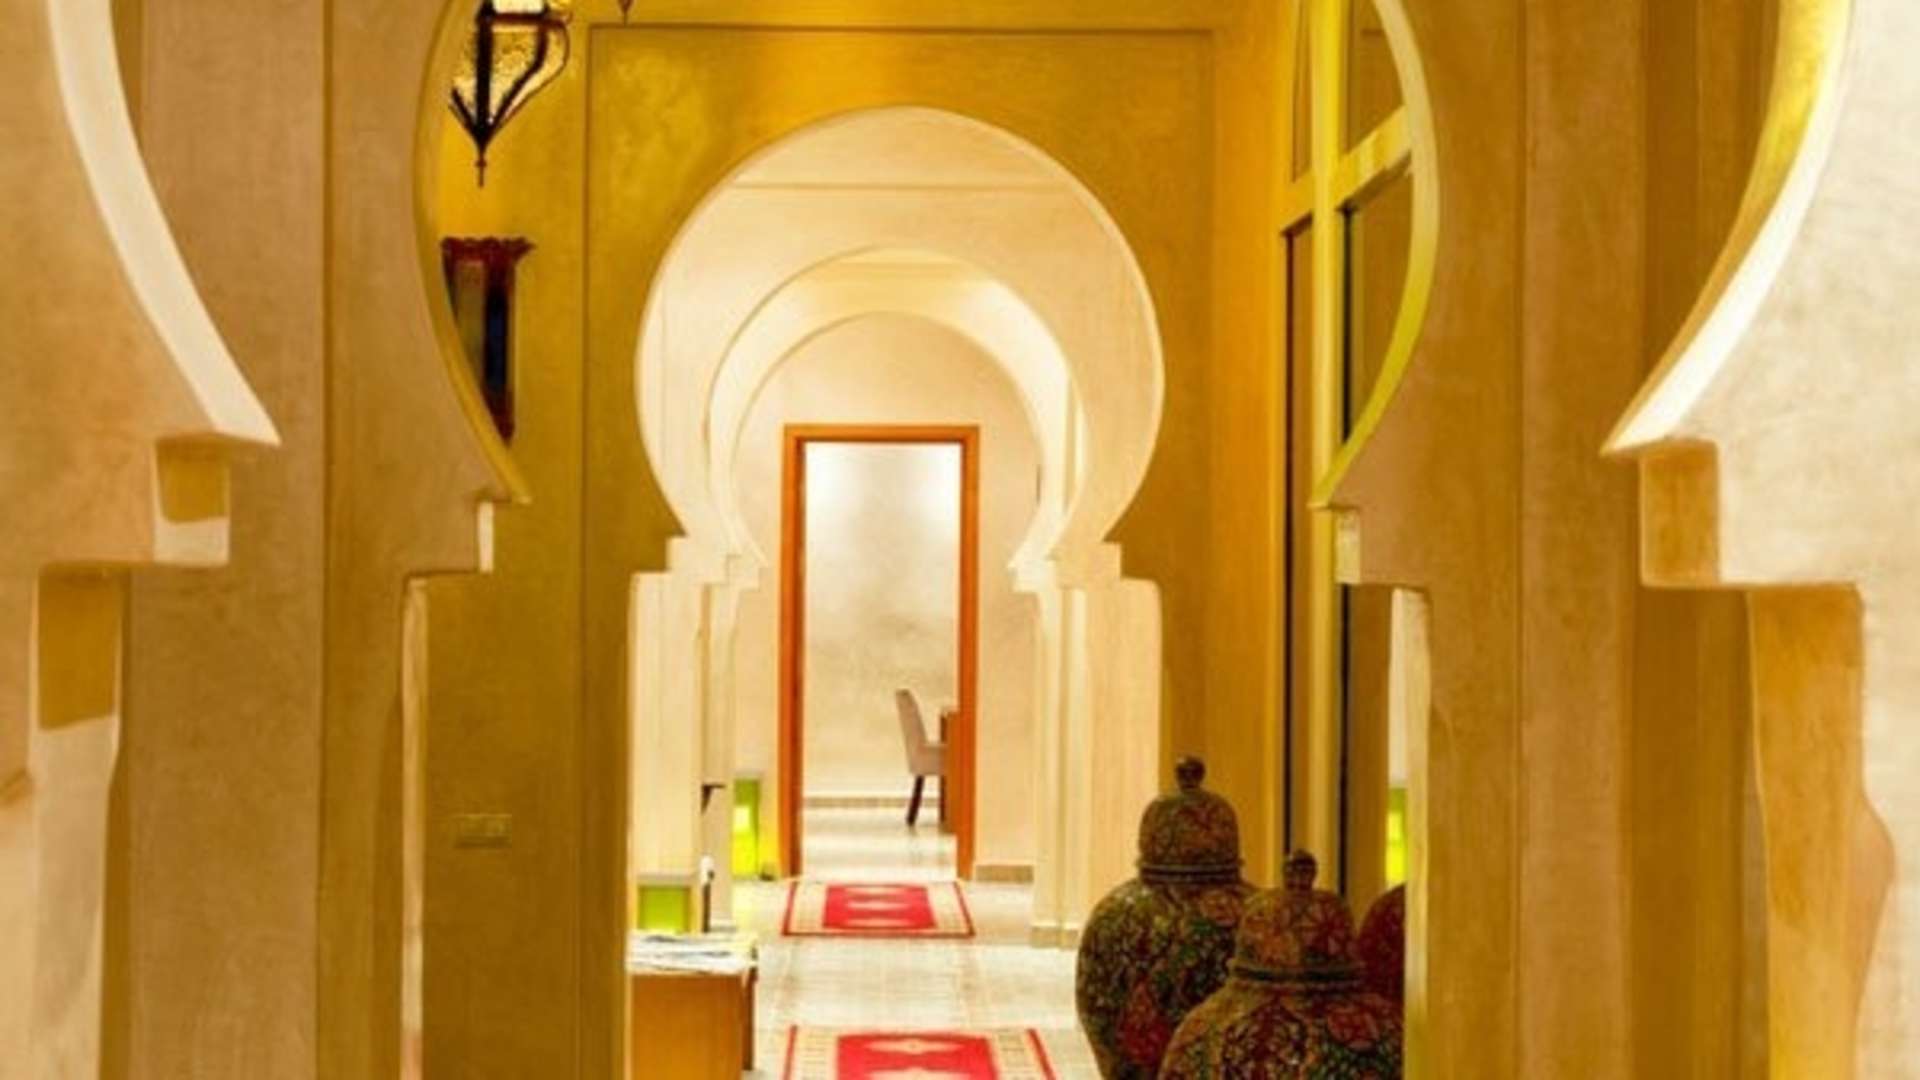 Location de vacances,Villa,Luxueuse villa d’environ 500 m², dans un parc privé d'1Ha avec piscine 8 personnes,Marrakech,Tamazouzte